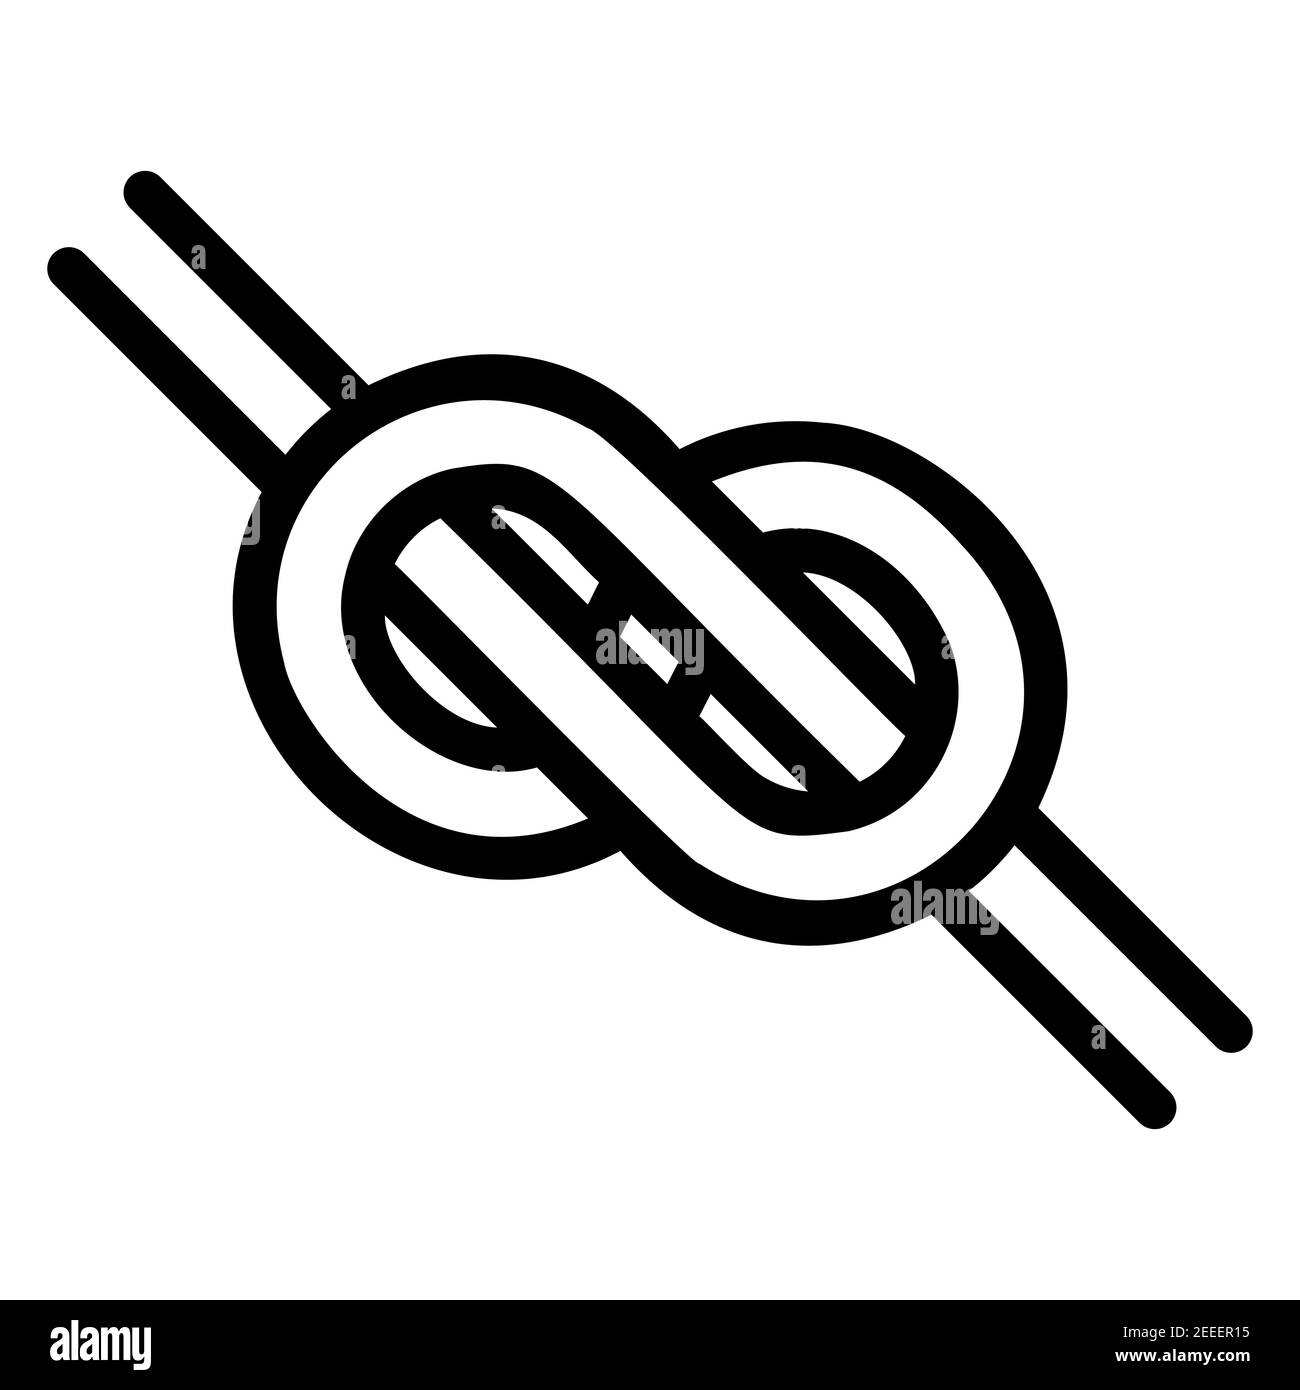 Logo ist ein geknüpfter Knoten in Form einer Unendlichkeit, die Form ist ein einfaches schwarz-weißes Emblem zu binden, fest geknüpfte Knoten Symbol Stock Vektor